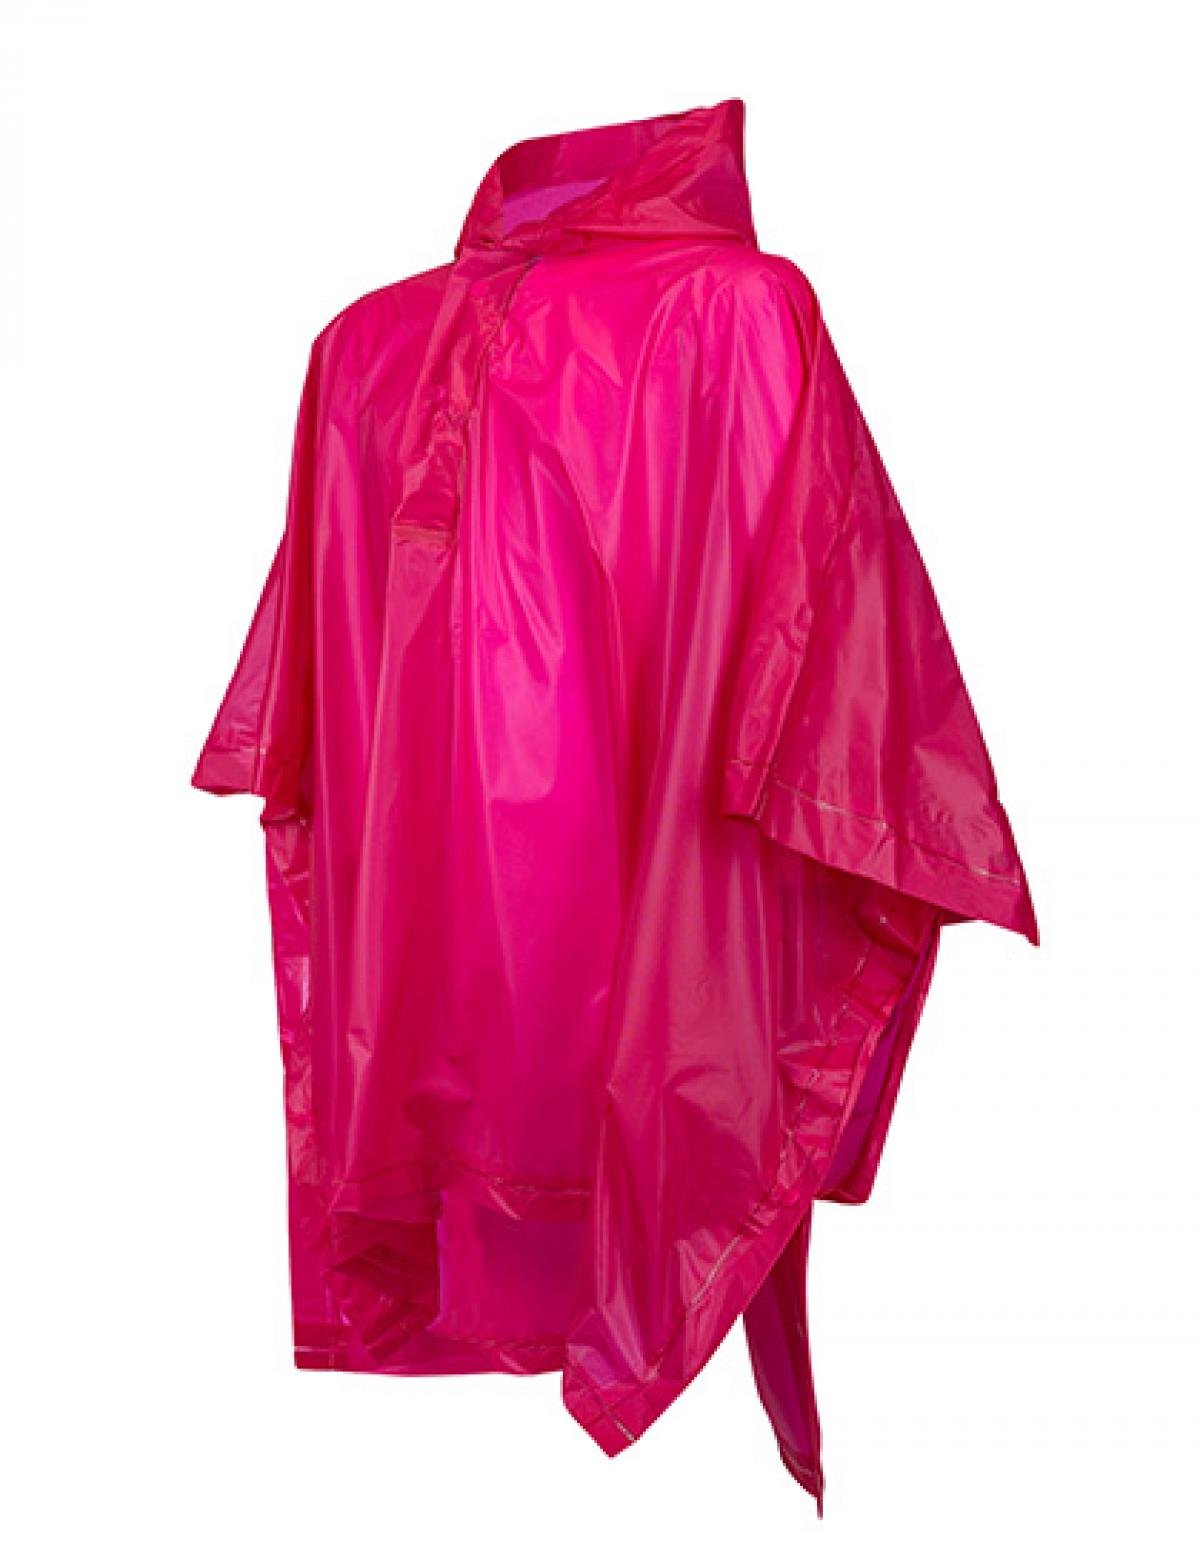 Splashmacs Kinder Kids Regen Poncho Regenponcho Regenjacke Wasserdicht Rain Suit 